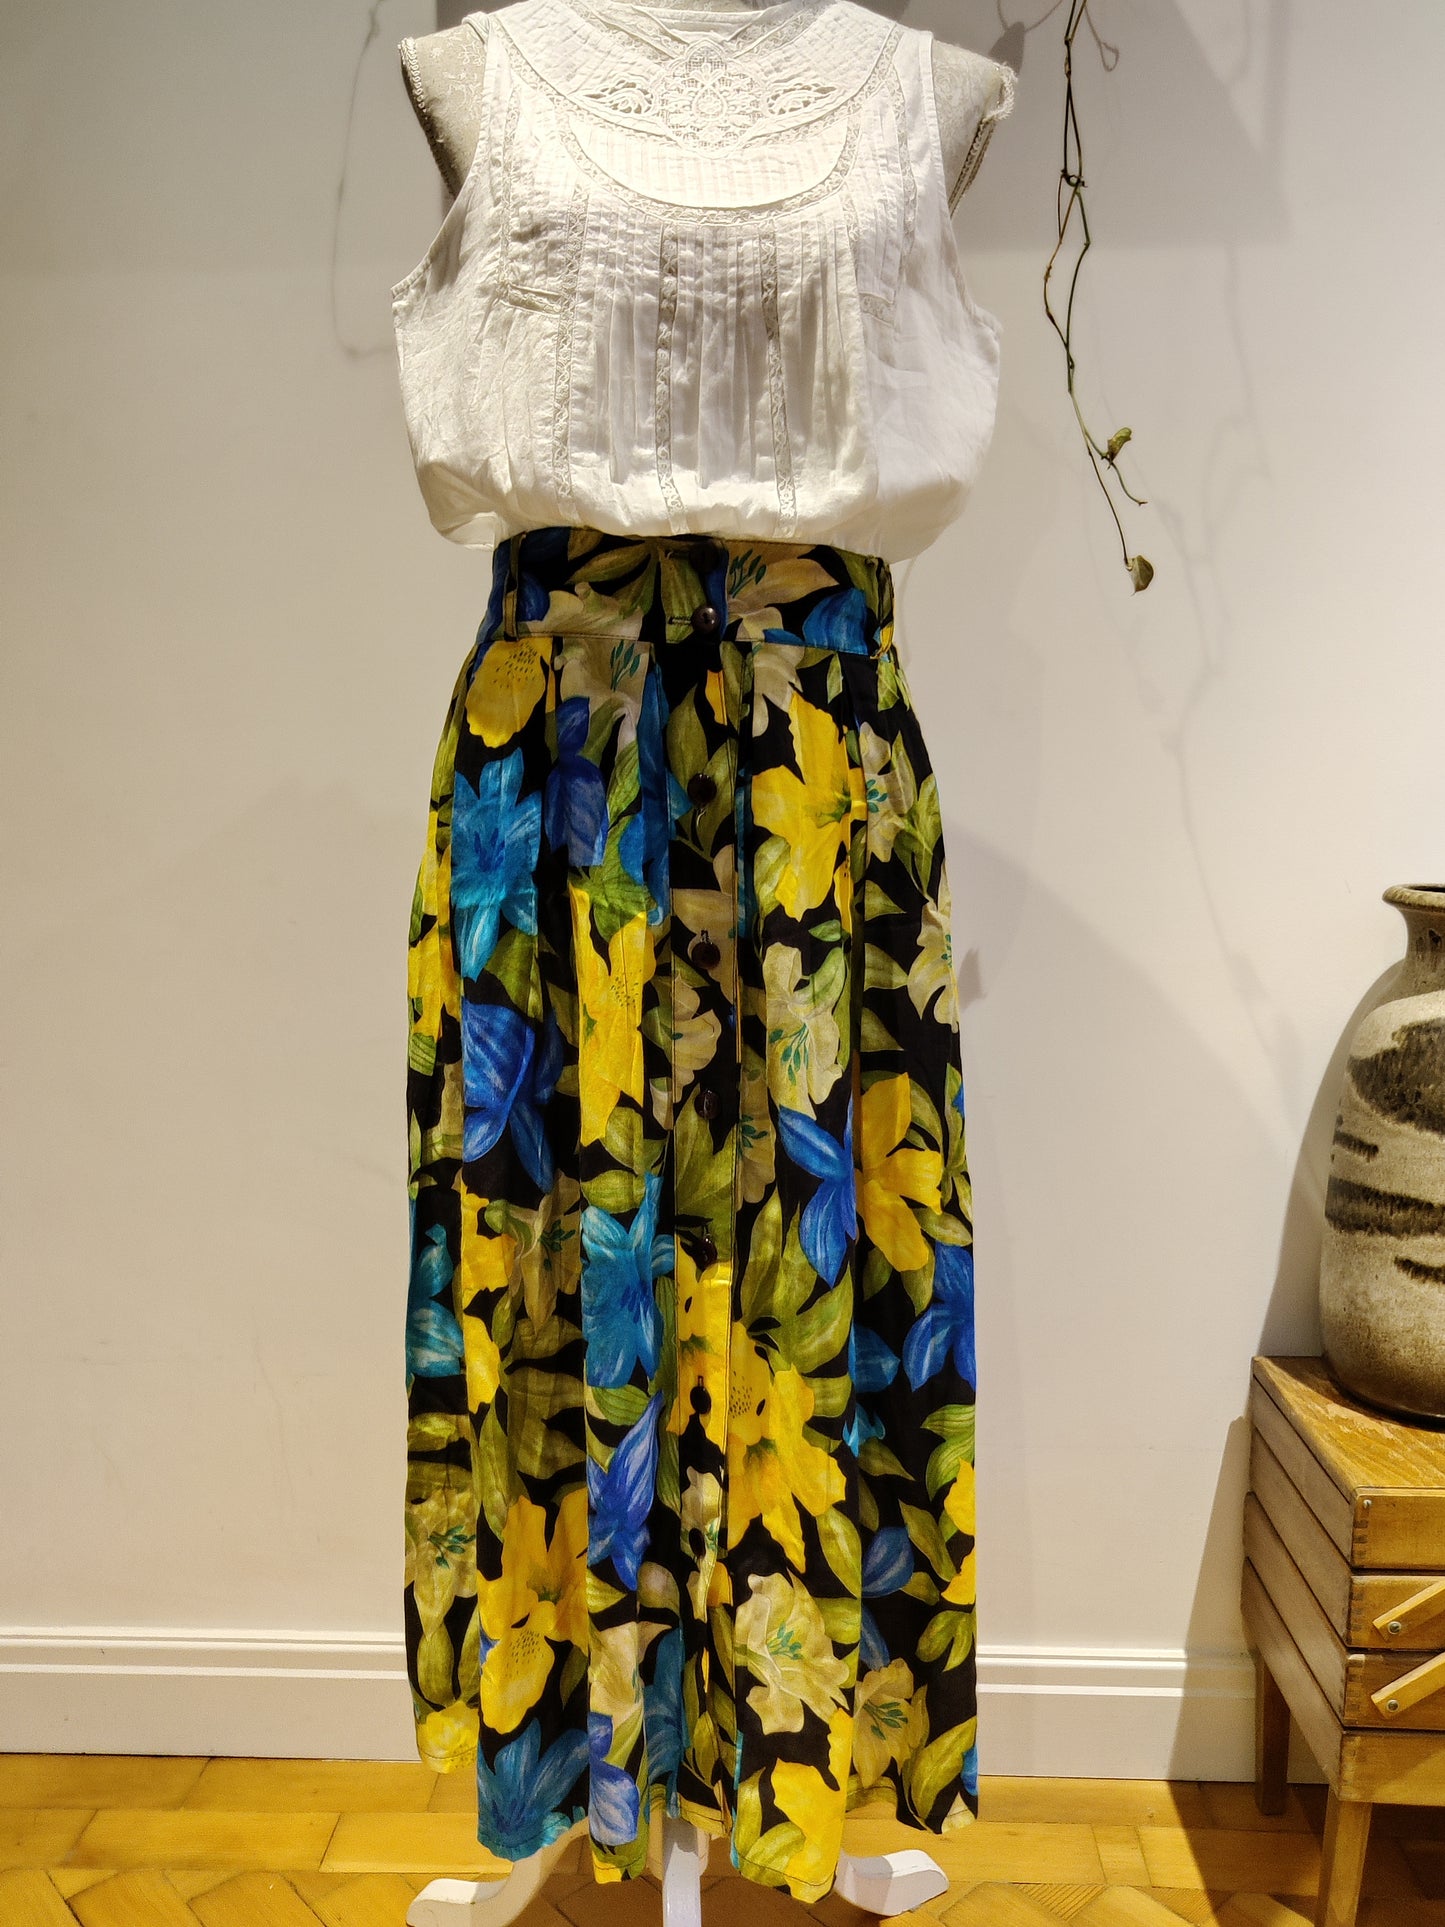 Vibrant flower print vintage skirt.